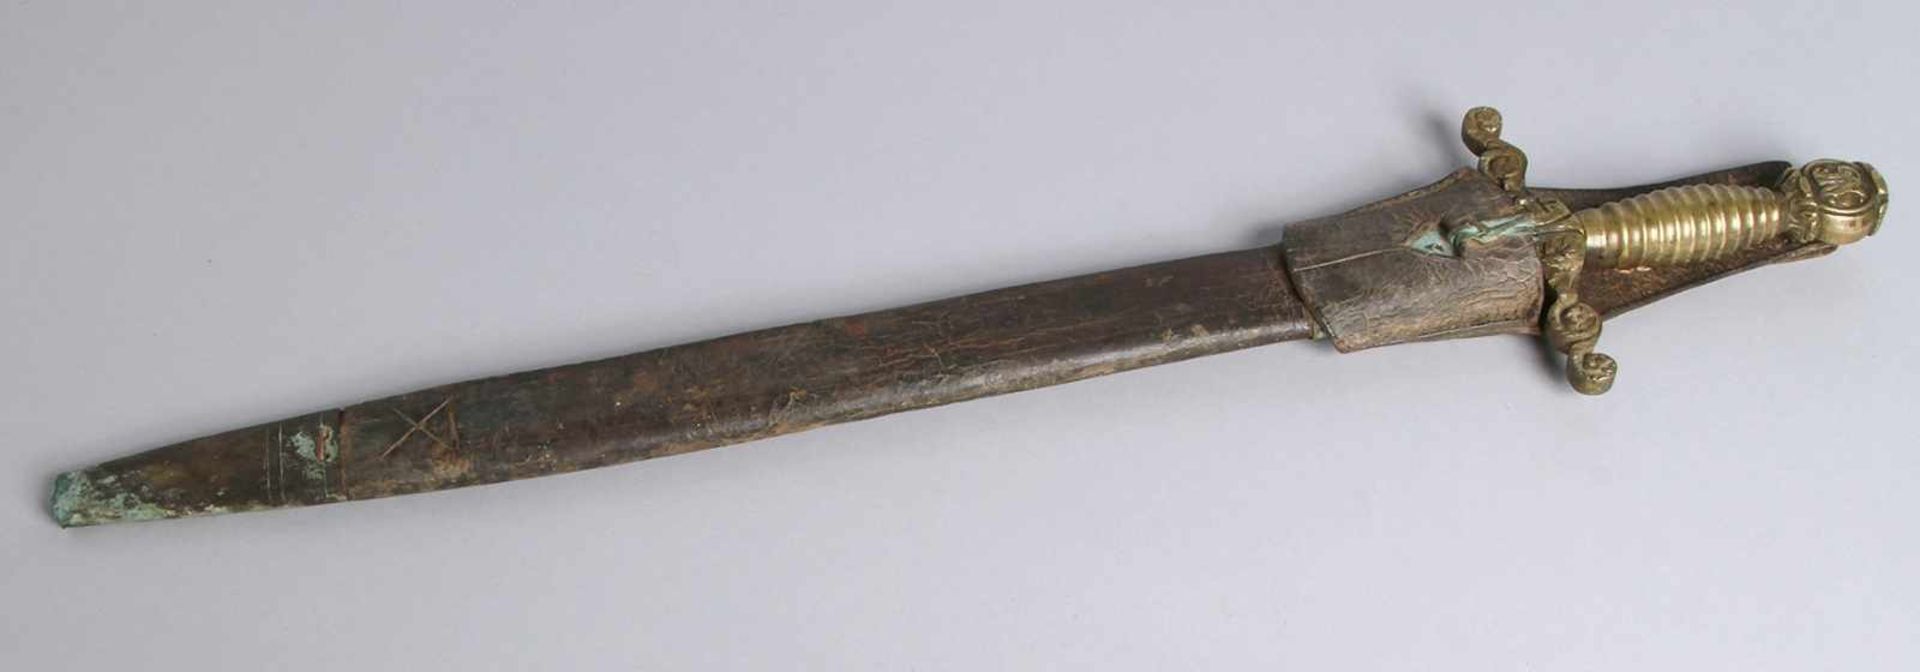 Kurzschwert, 19. Jh., spitz zulaufende Stahlklinge, gegossener Messinggriff mitParierstange und